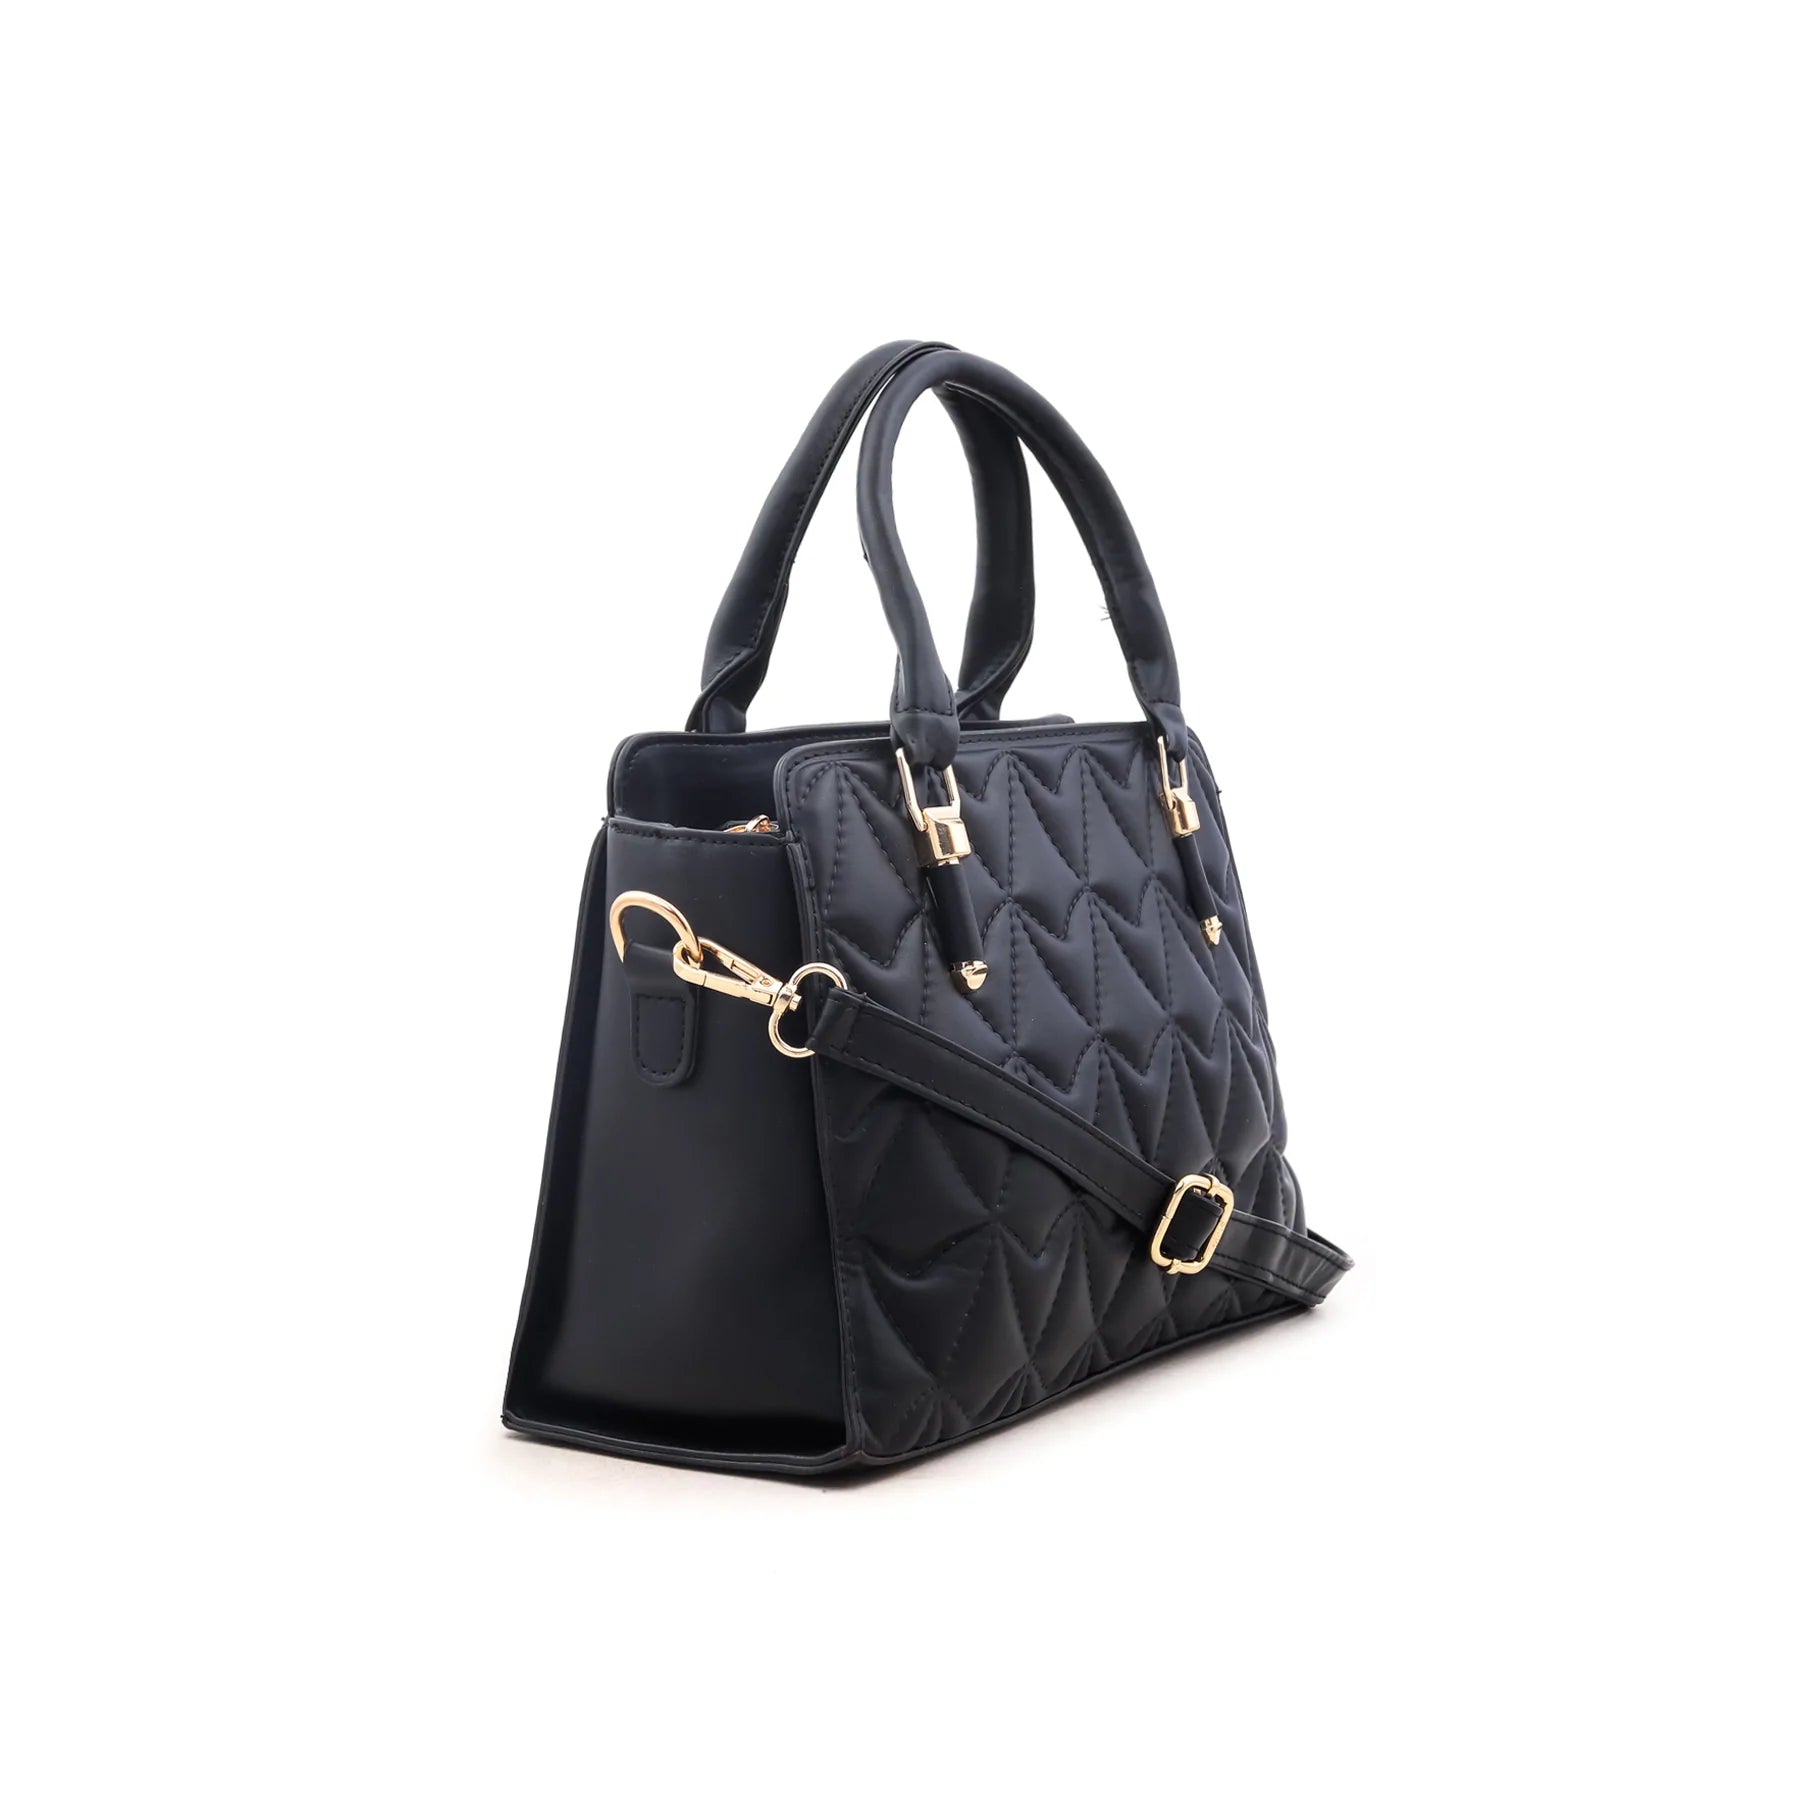 Black Formal Hand Bag P35624